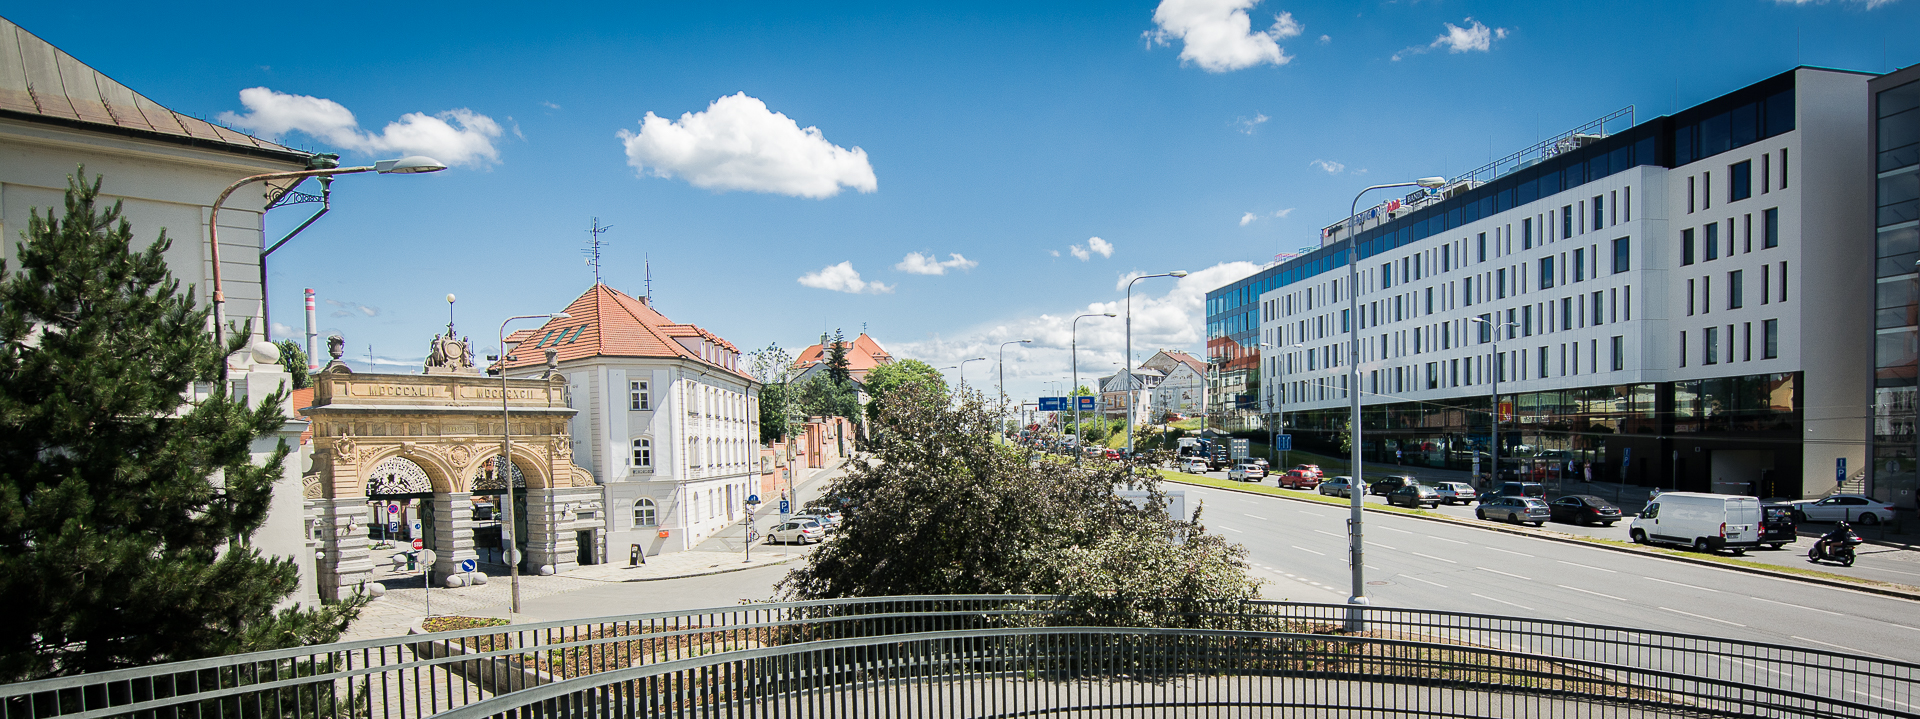 Centrum se nachází přímo naproti areálu Plzeňského Prazdroje. Zdroj: HBC